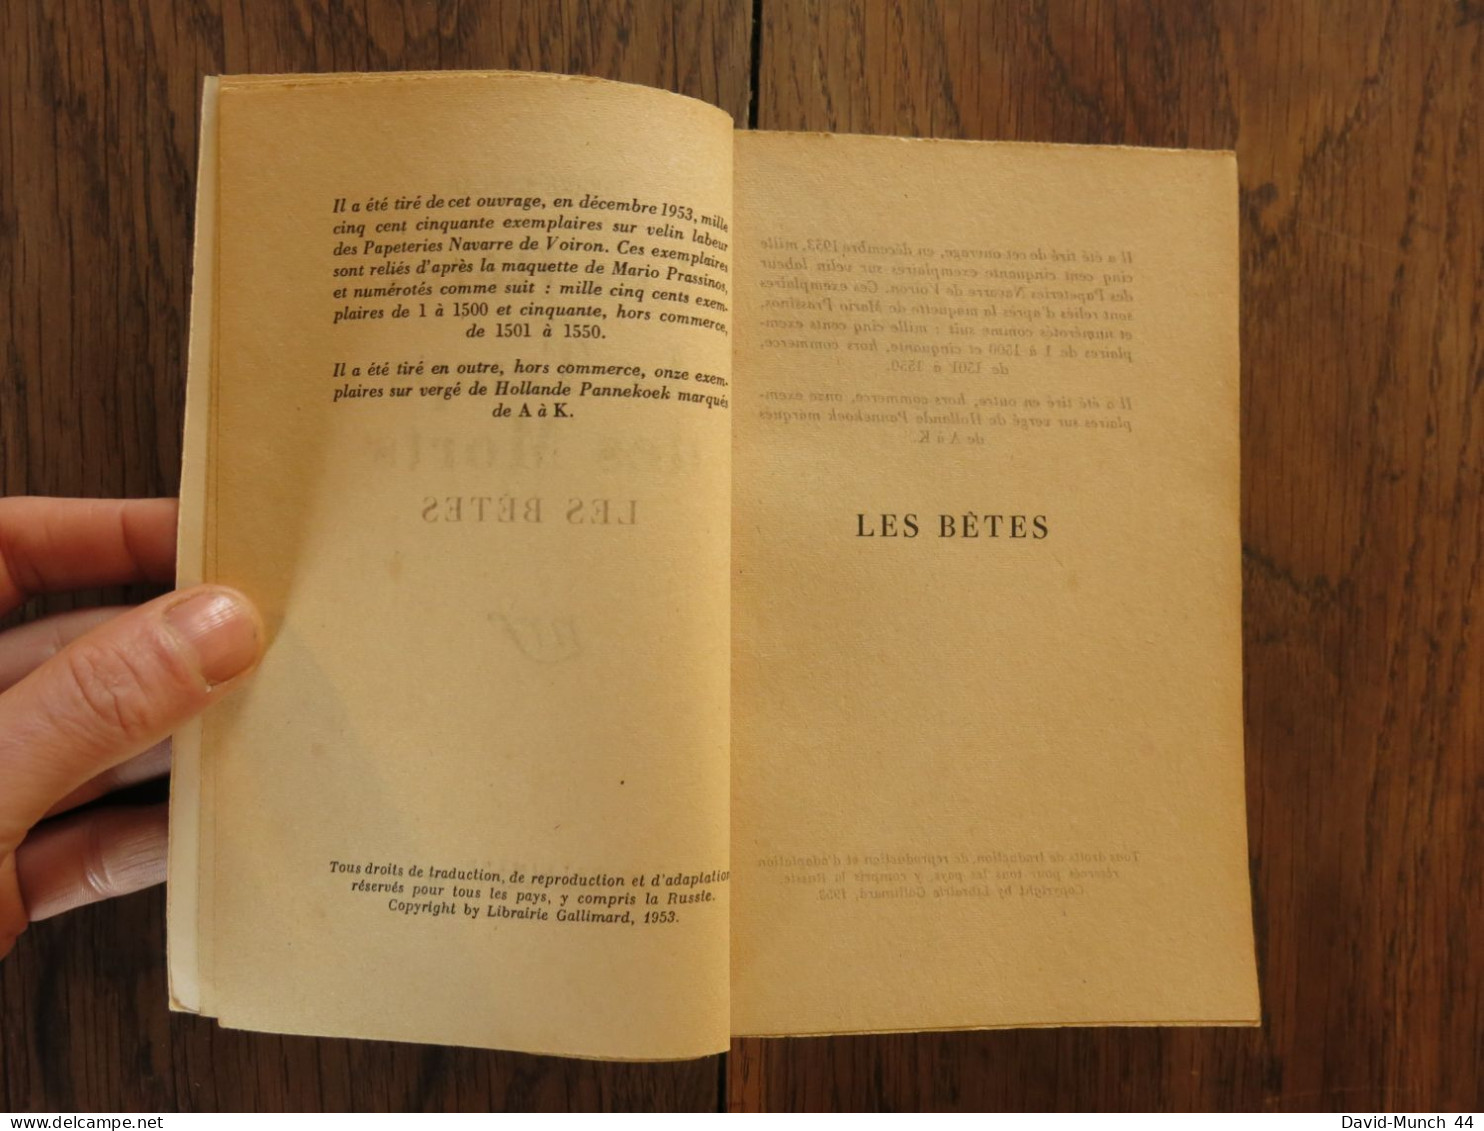 Les bêtes, suivi de Le temps des morts de Pierre Gascar. Gallimard, Nrf. 1954. Exemplaire dédicacé par l'auteur